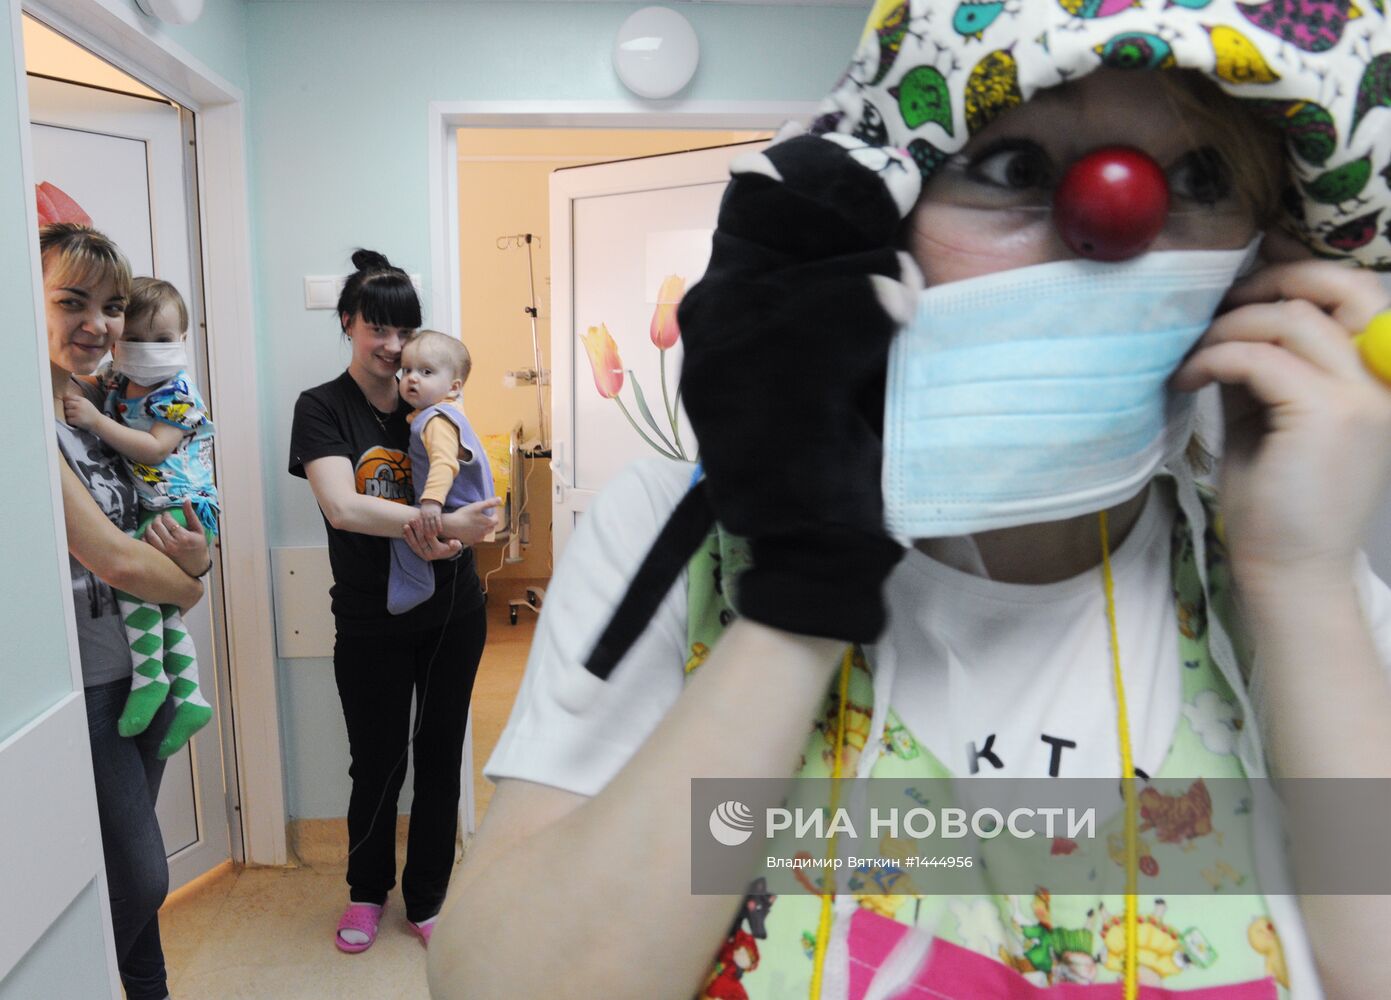 Артисты учреждения "Доктор клоун" в детской клинической больнице